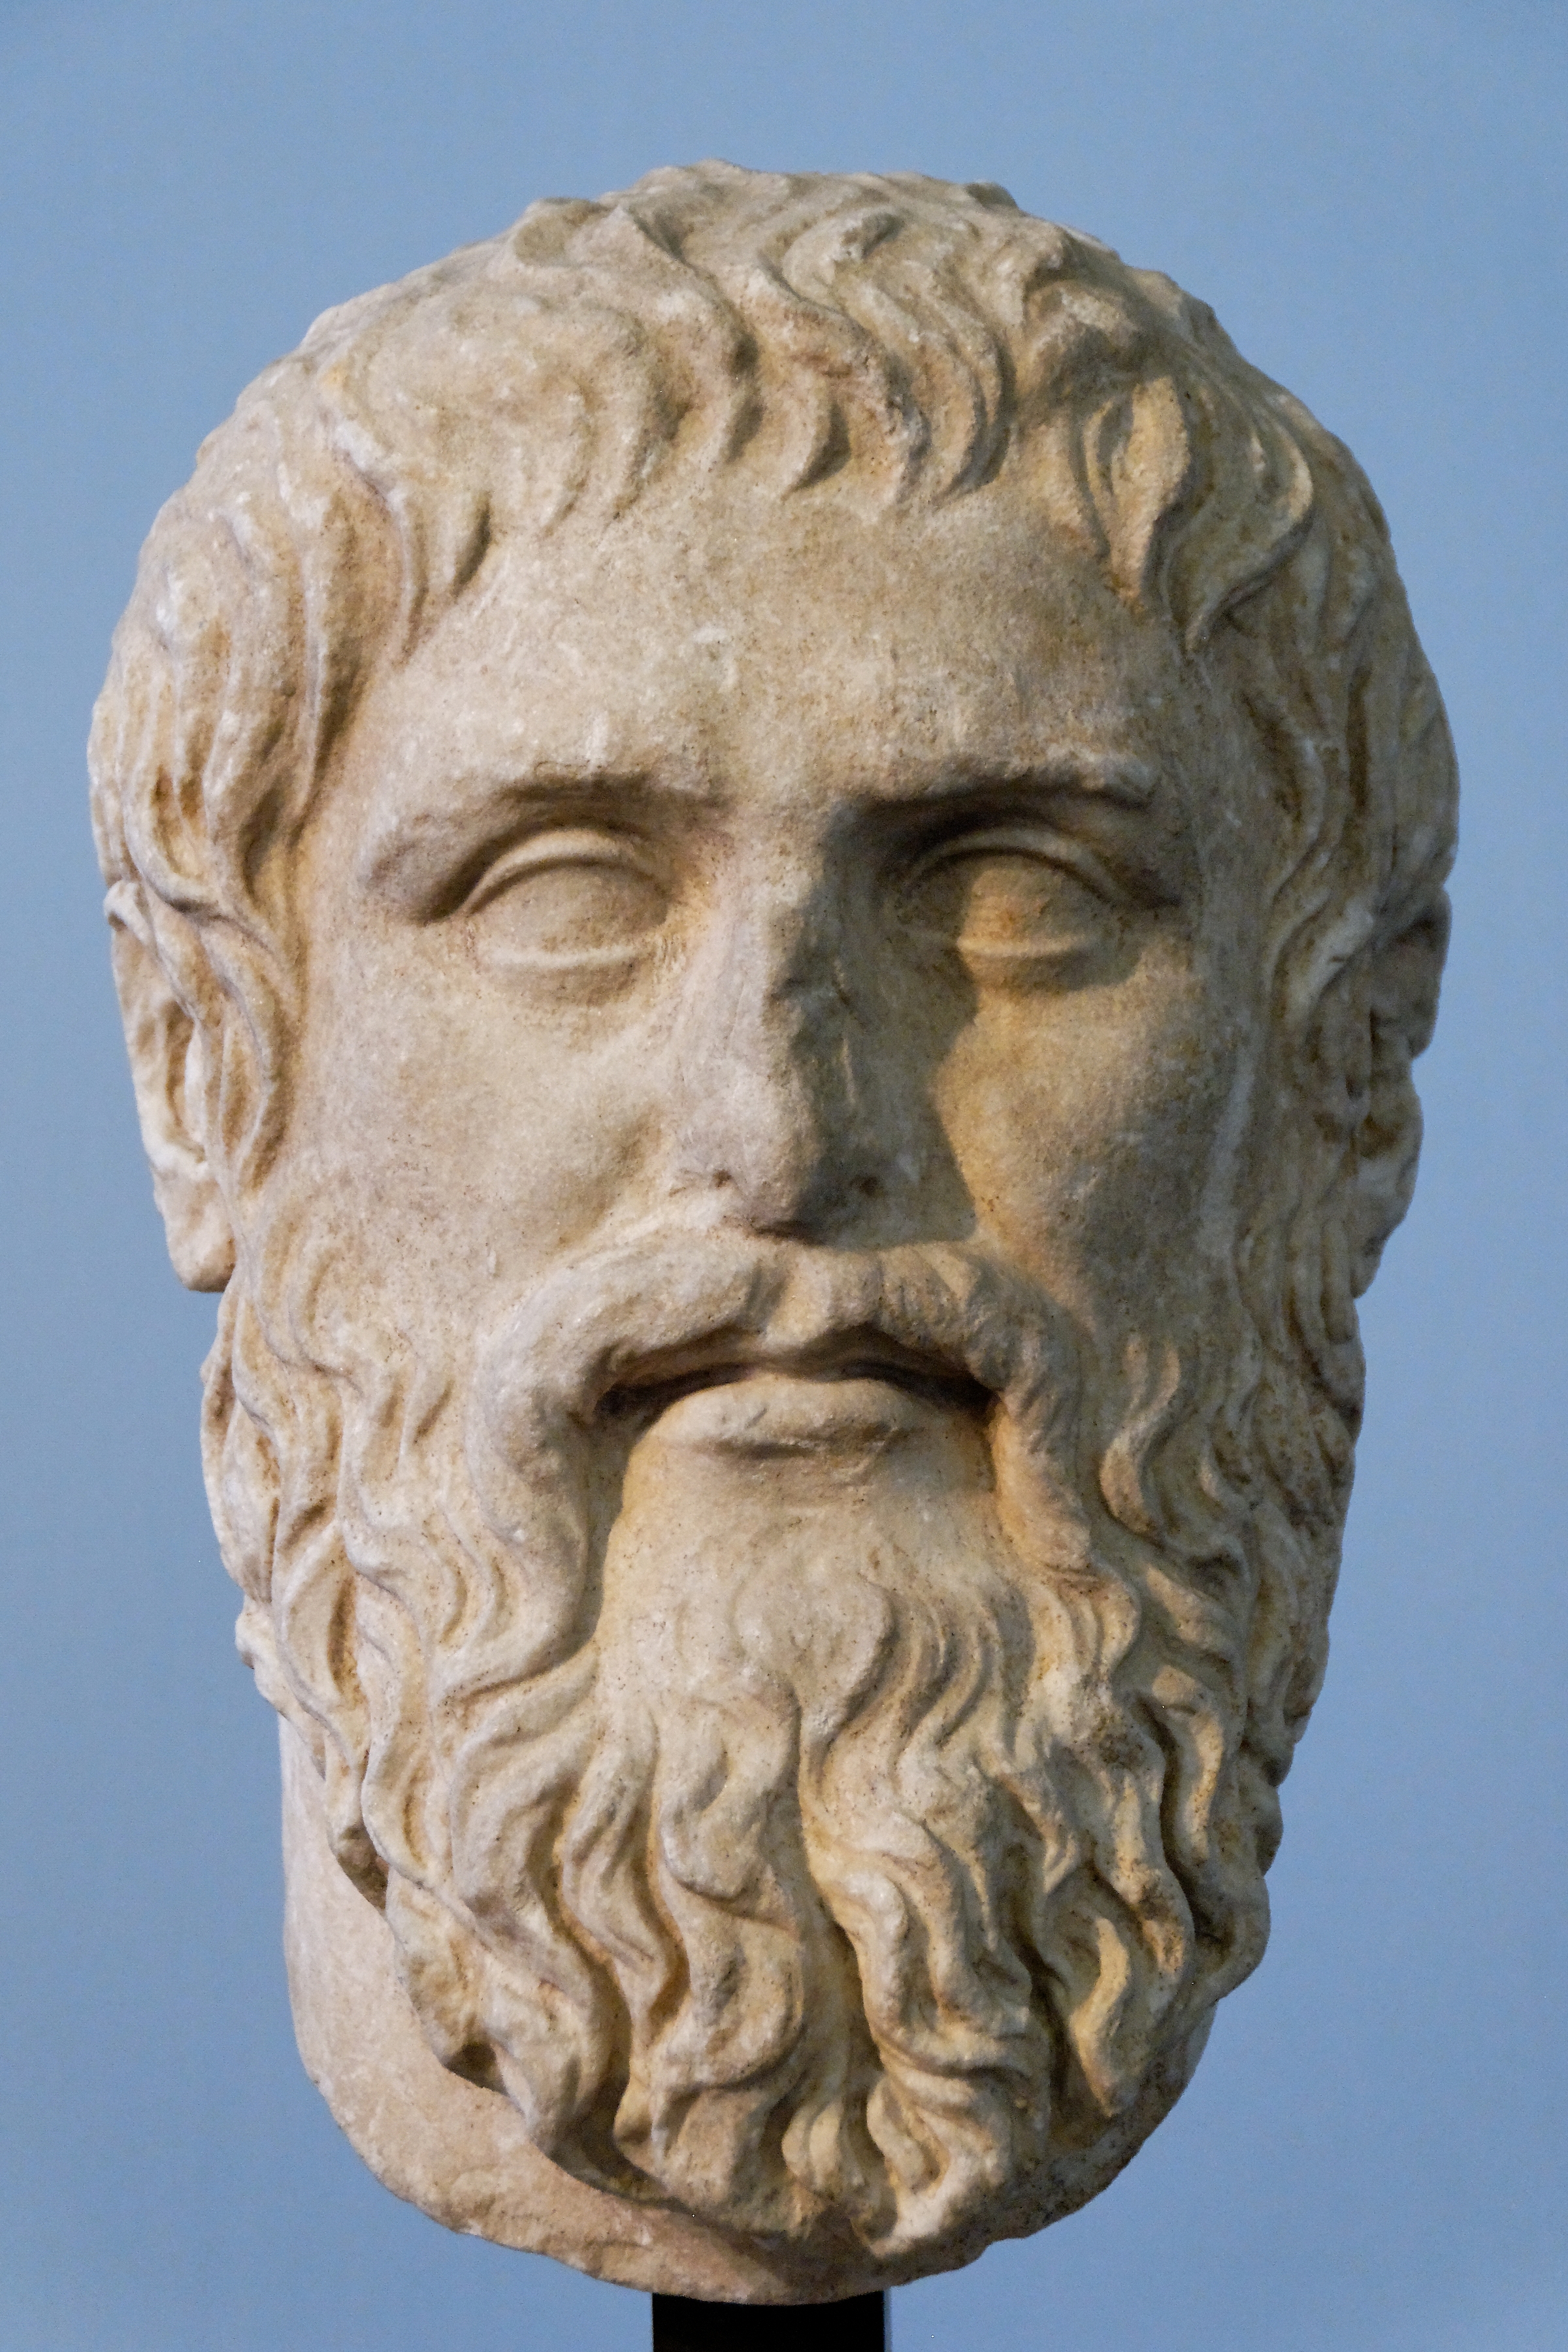 Plato Silanion Musei Capitolini MC1377